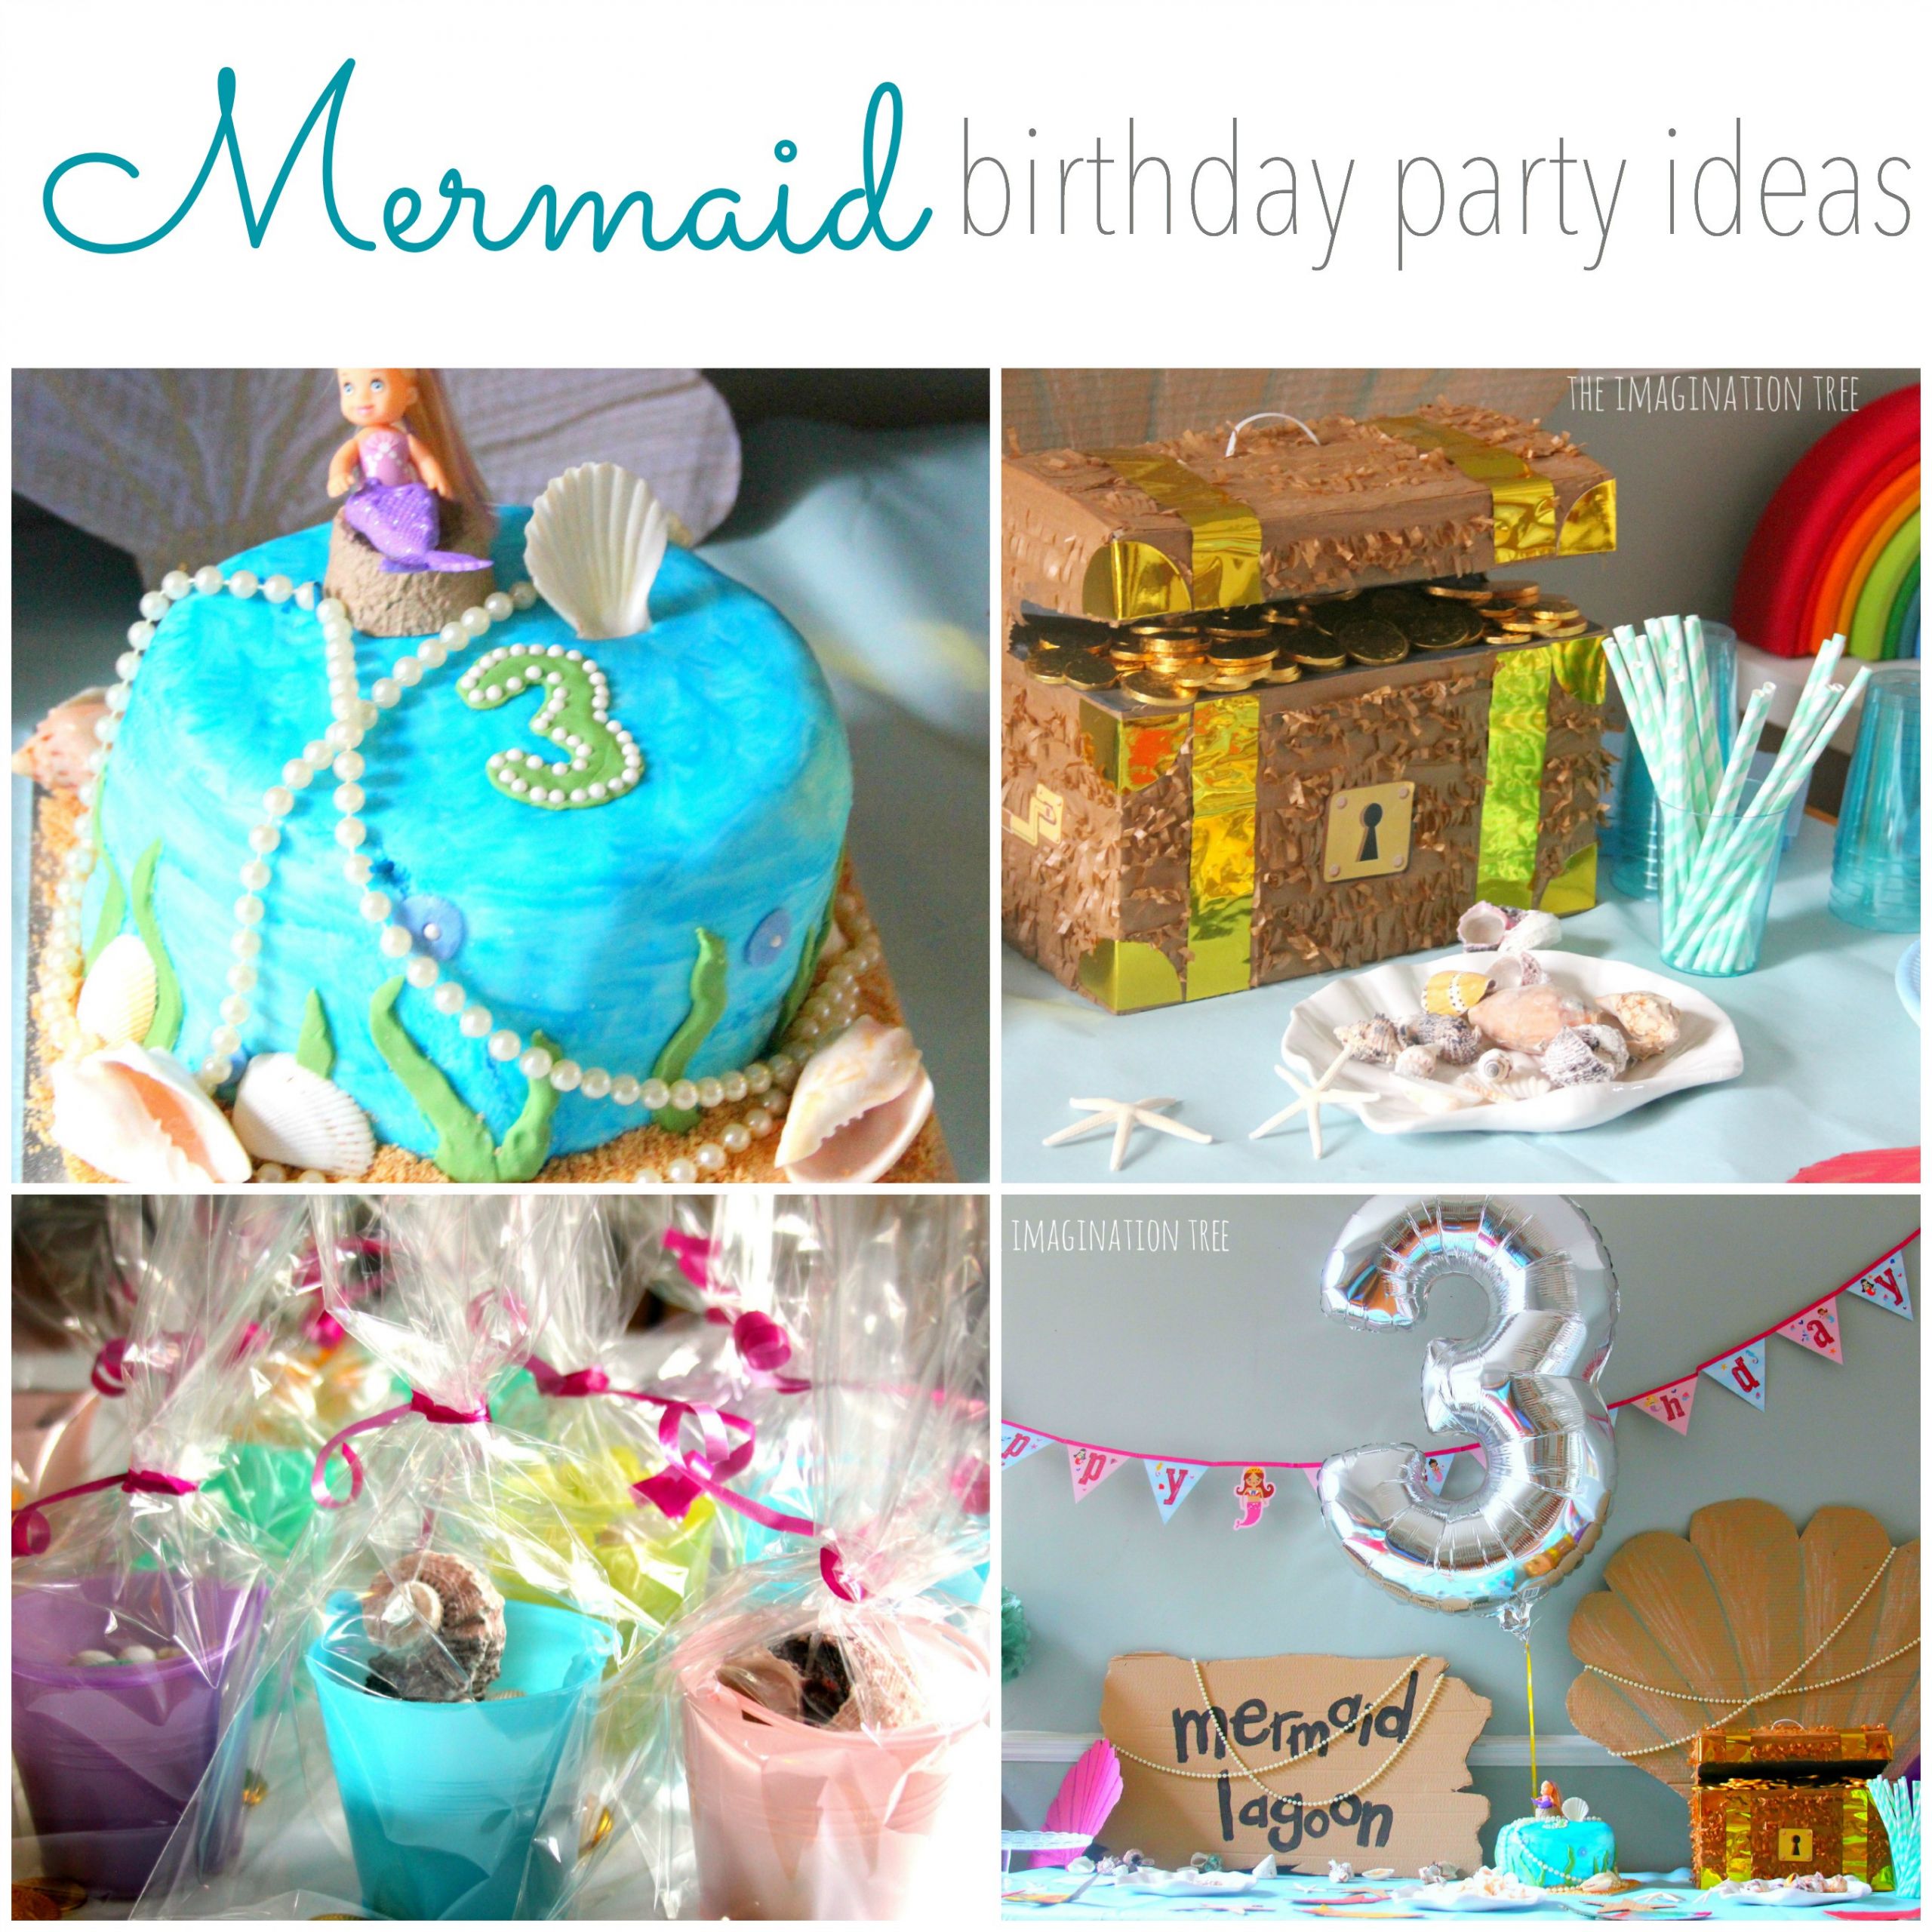 Mermaid Party Ideas 4 Year Old
 The Best Mermaid Party Ideas 4 Year Old Home Inspiration